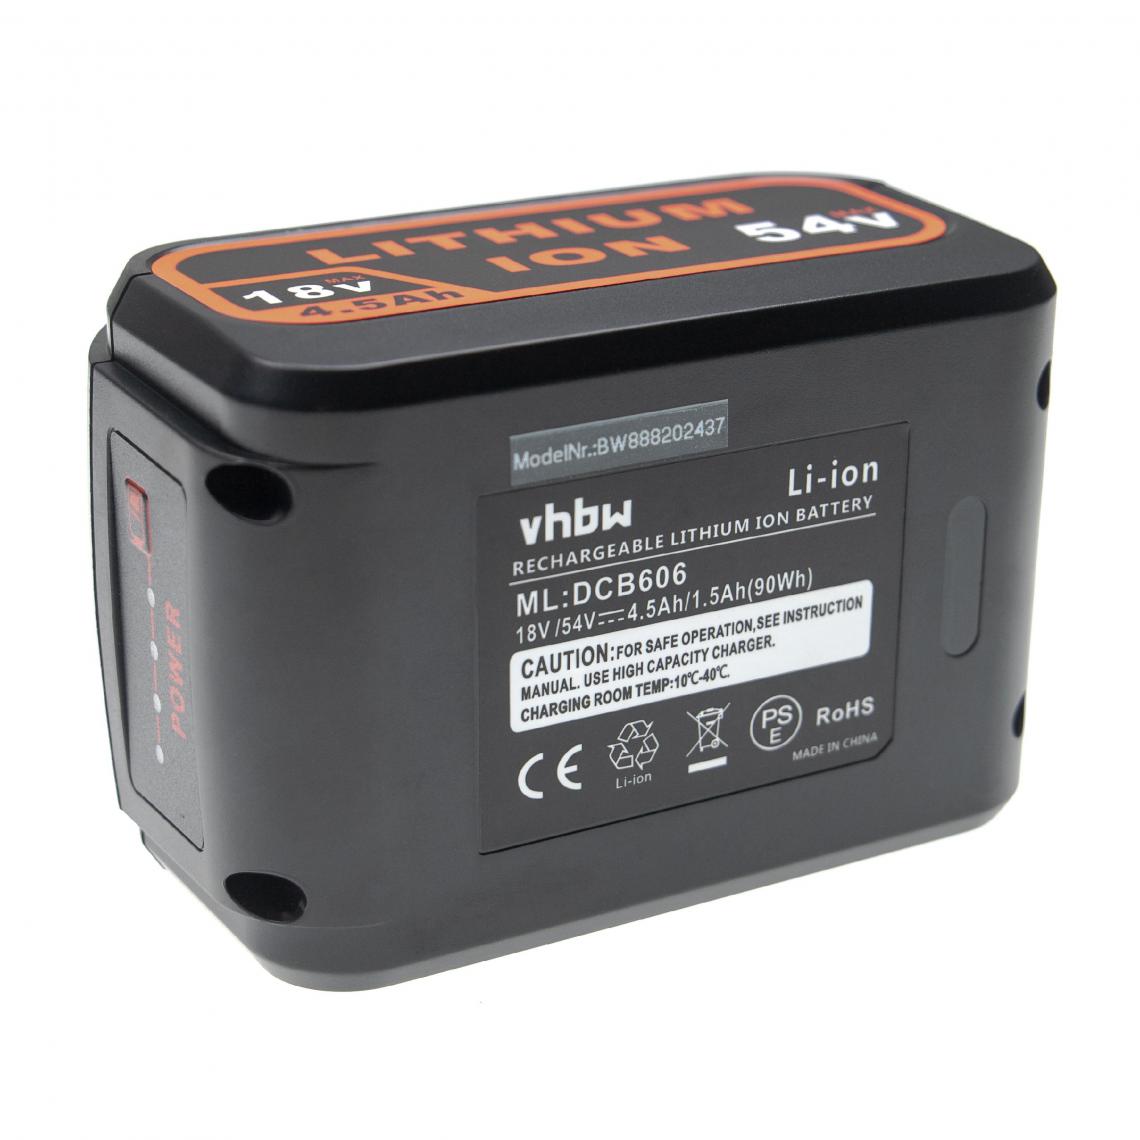 Vhbw - vhbw Batterie compatible avec DeWalt CL3.C18S, DCD740, DCD740B, DCD771, DCD776 outil électrique (4500 mAh, Li-ion, 18 V / 54 V) - Accessoires vissage, perçage